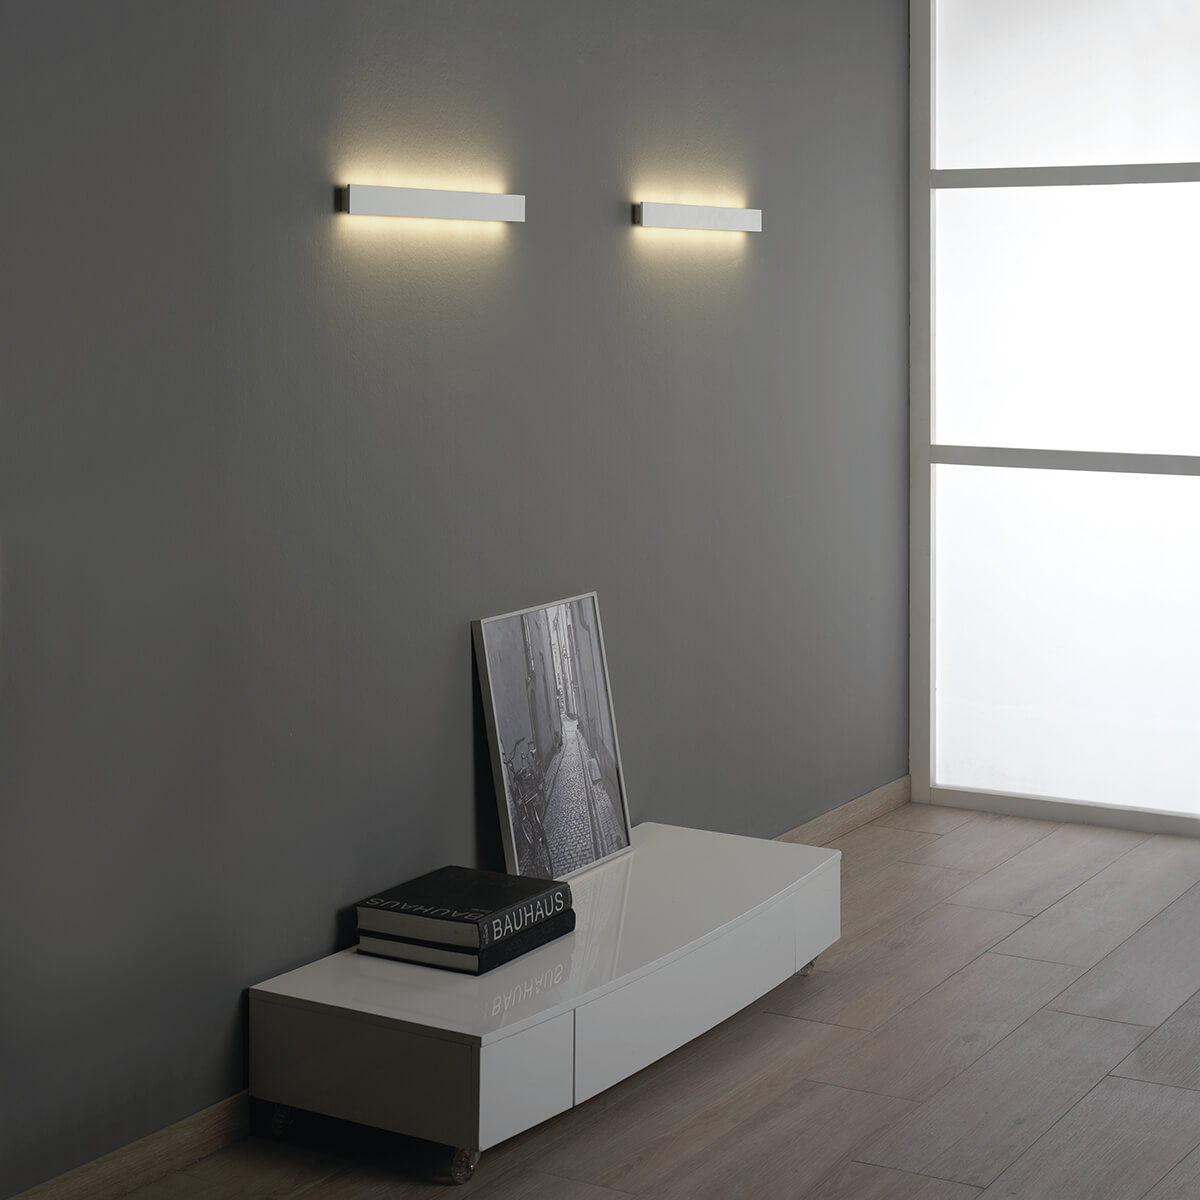 Lámpara LED rectangular en suspensión para techo de diseño Manolo Olè by FM